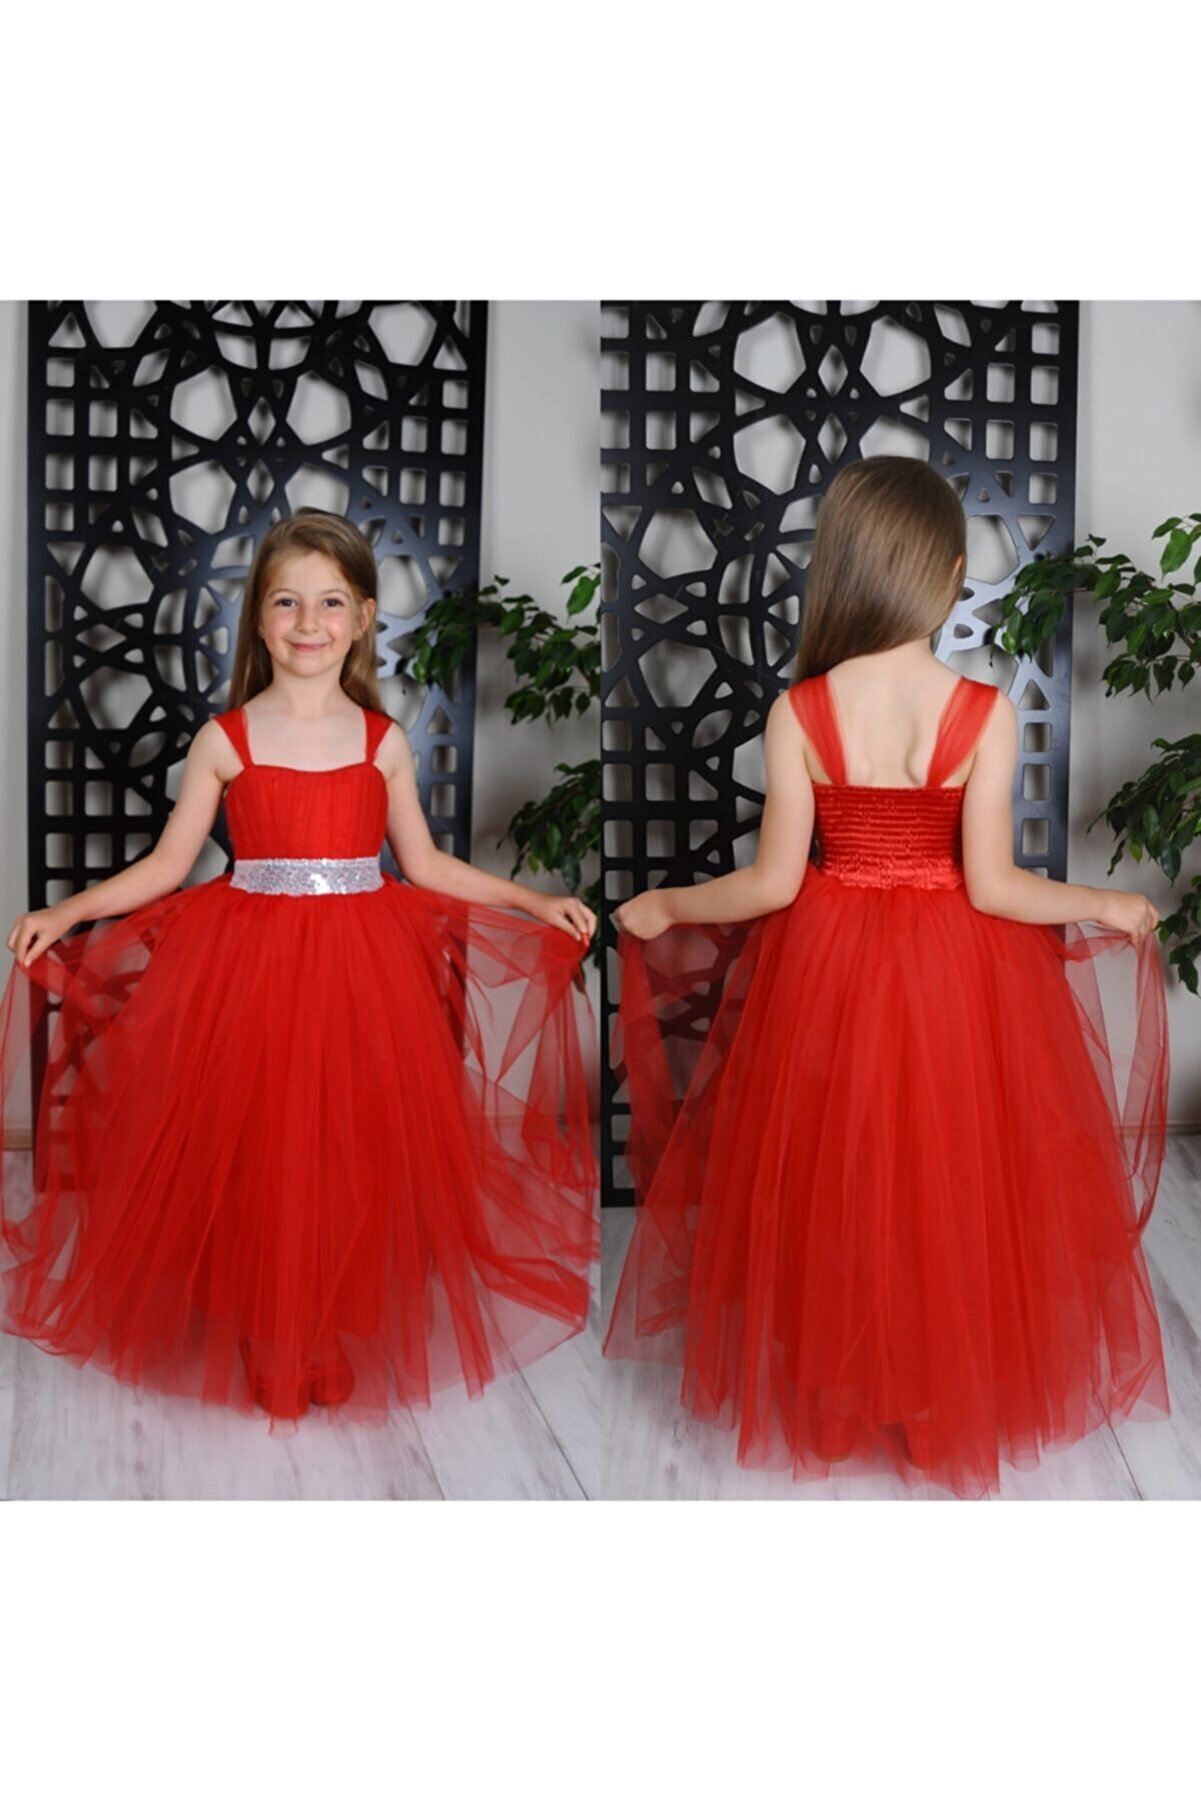 KT PERA BABY Kız Çocuk Uzun Pamukkoza Kırmızıabiye Elbise